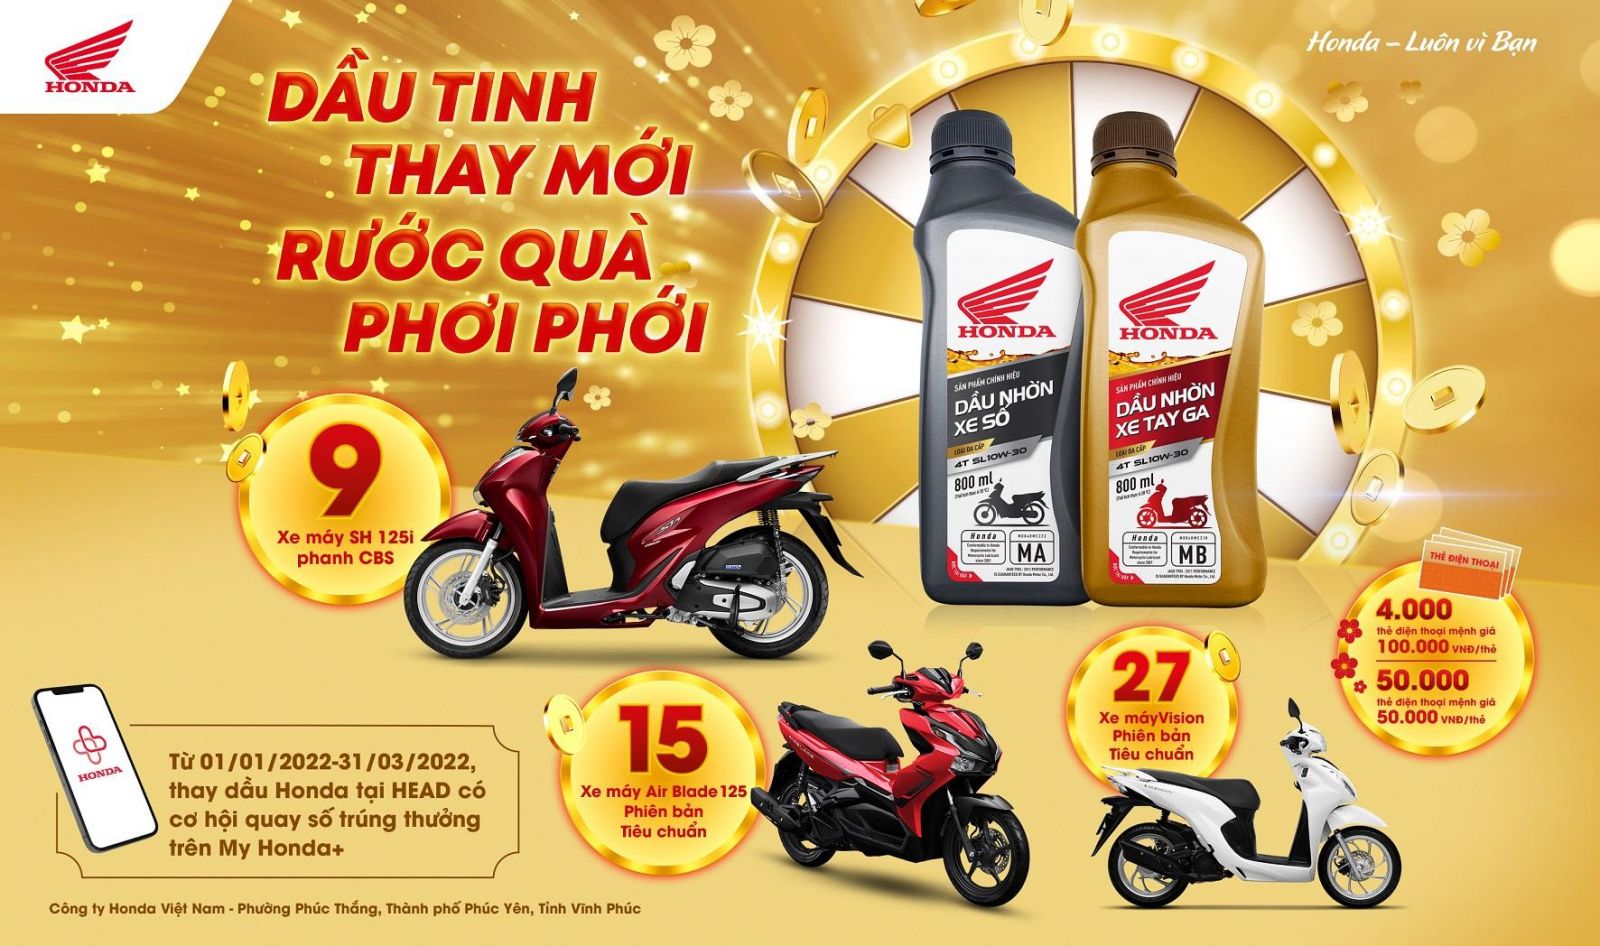 Honda Việt Nam thực hiện chương trình khuyến mại Dầu tinh thay mới – Rước quà phơi phới